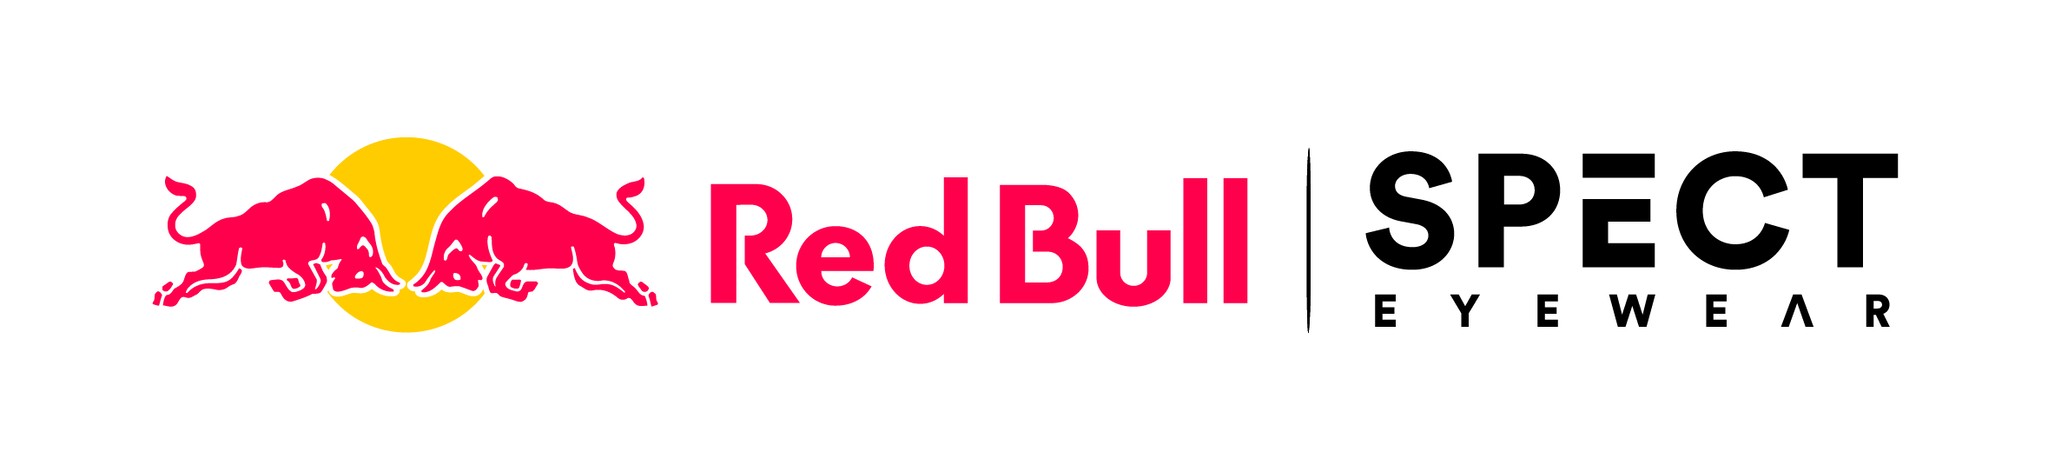 Red Bull SPECT JAPAN